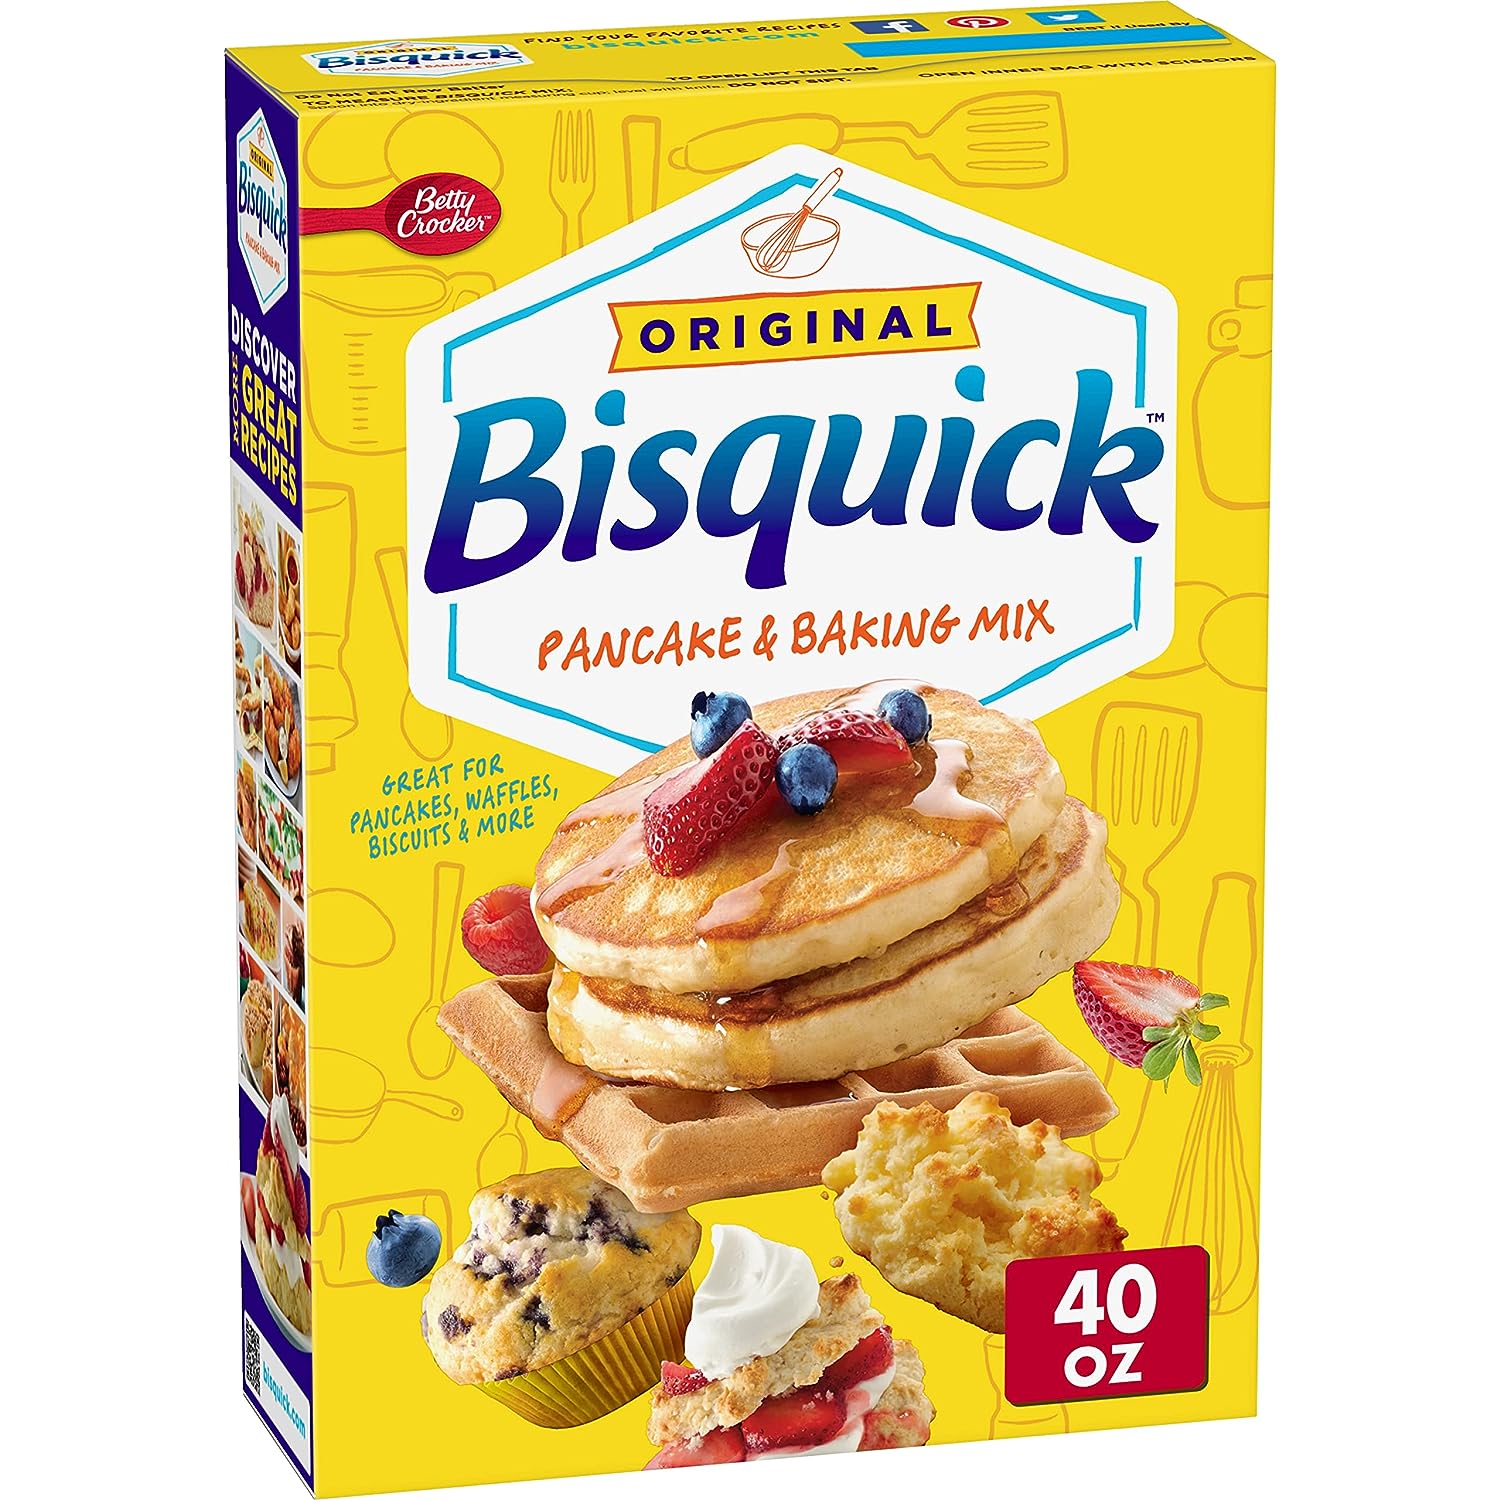 Betty Crocker Bisquick Original Pancake & Baking Mix, 40 oz